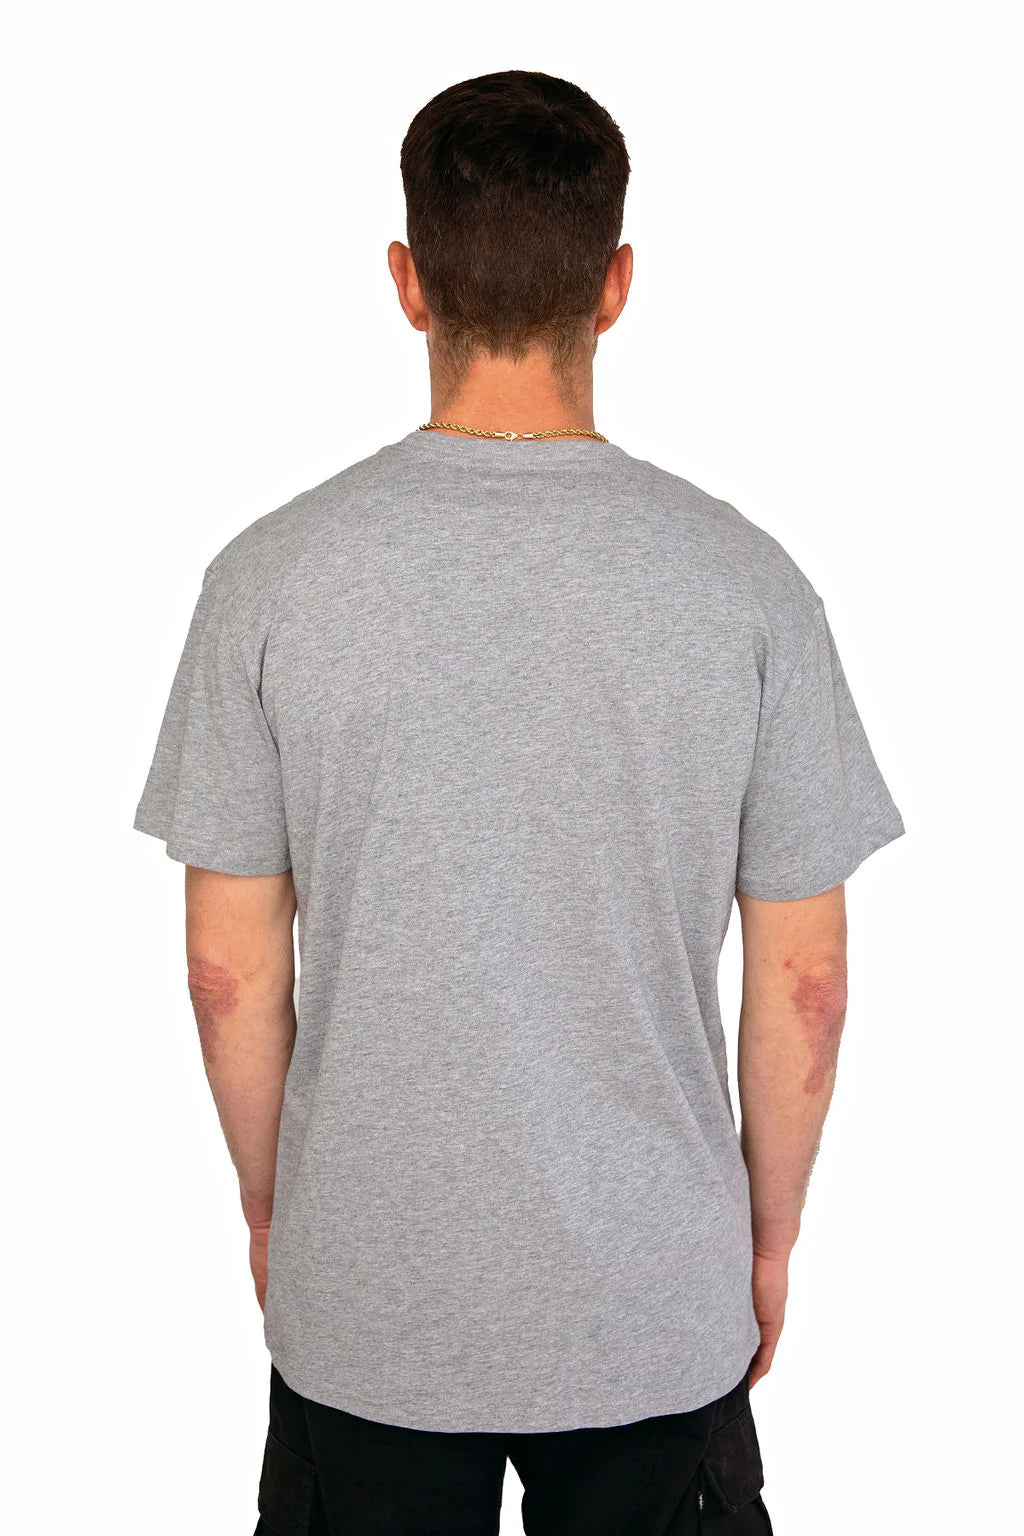 Dcypher Apparel OG Logo S/S T-Shirt - Grey Marle